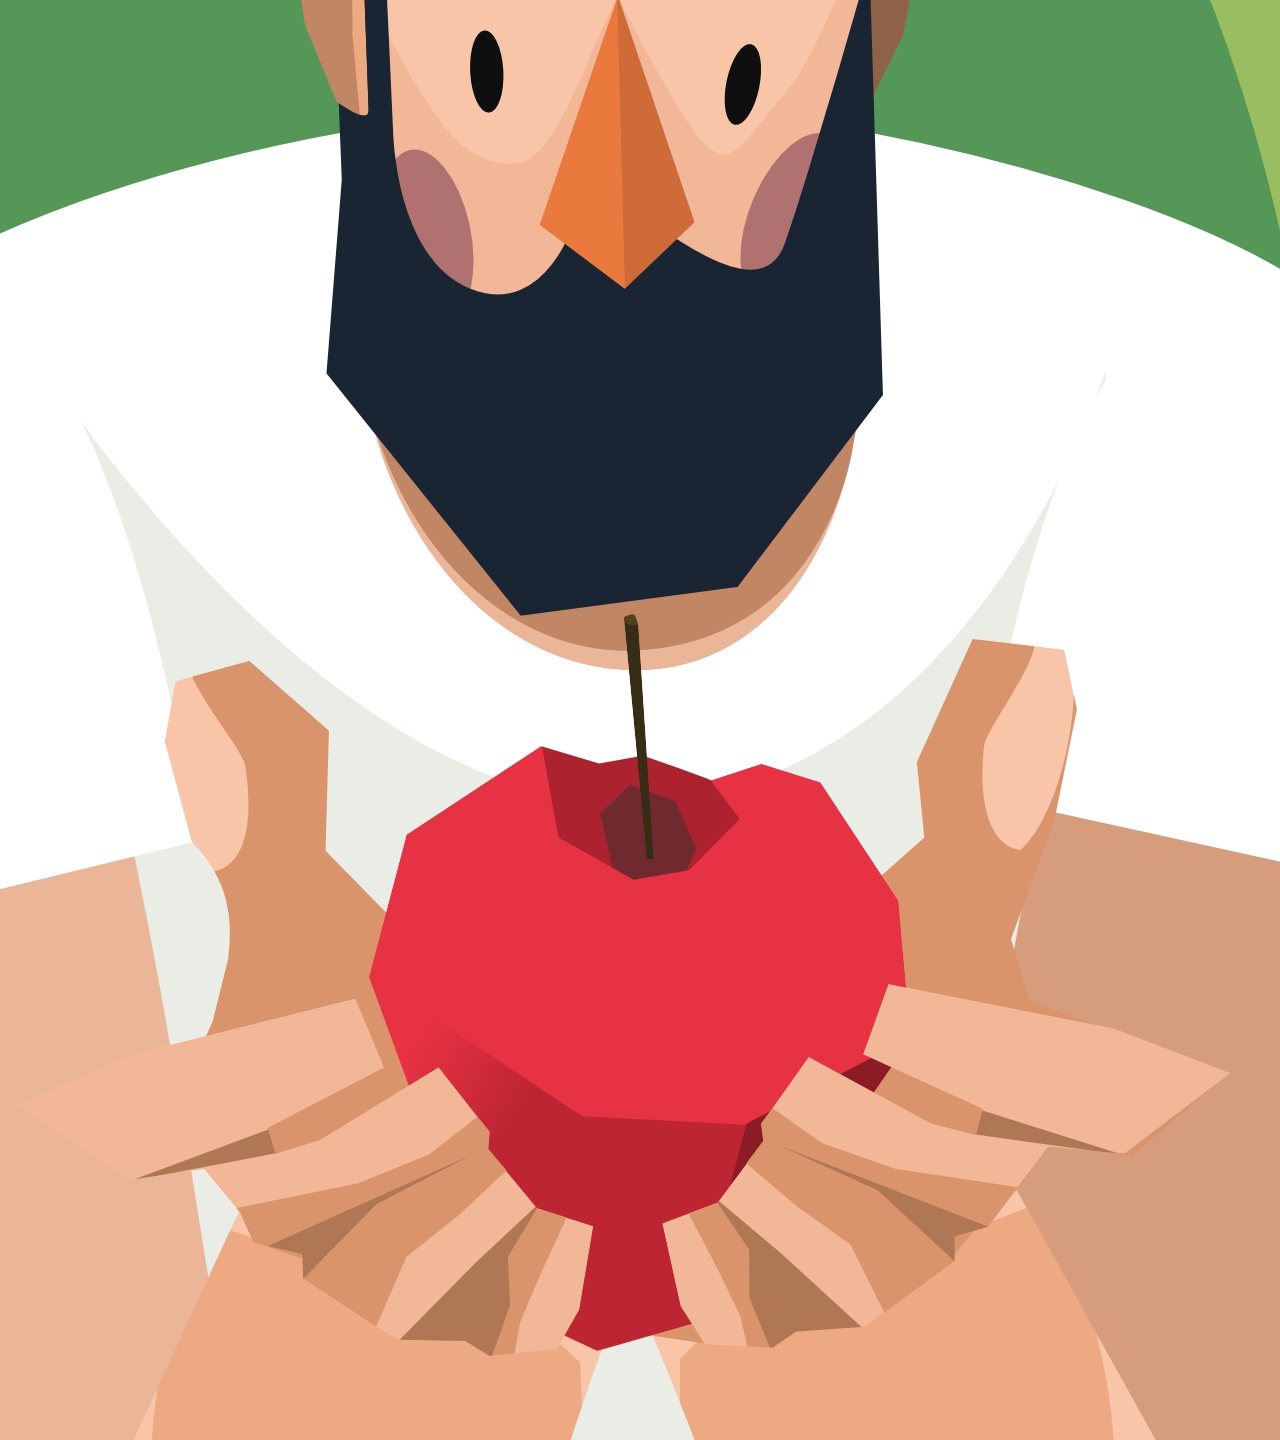 uomo con barba che tiene racchiusa tra le proprie mani una mela rossa